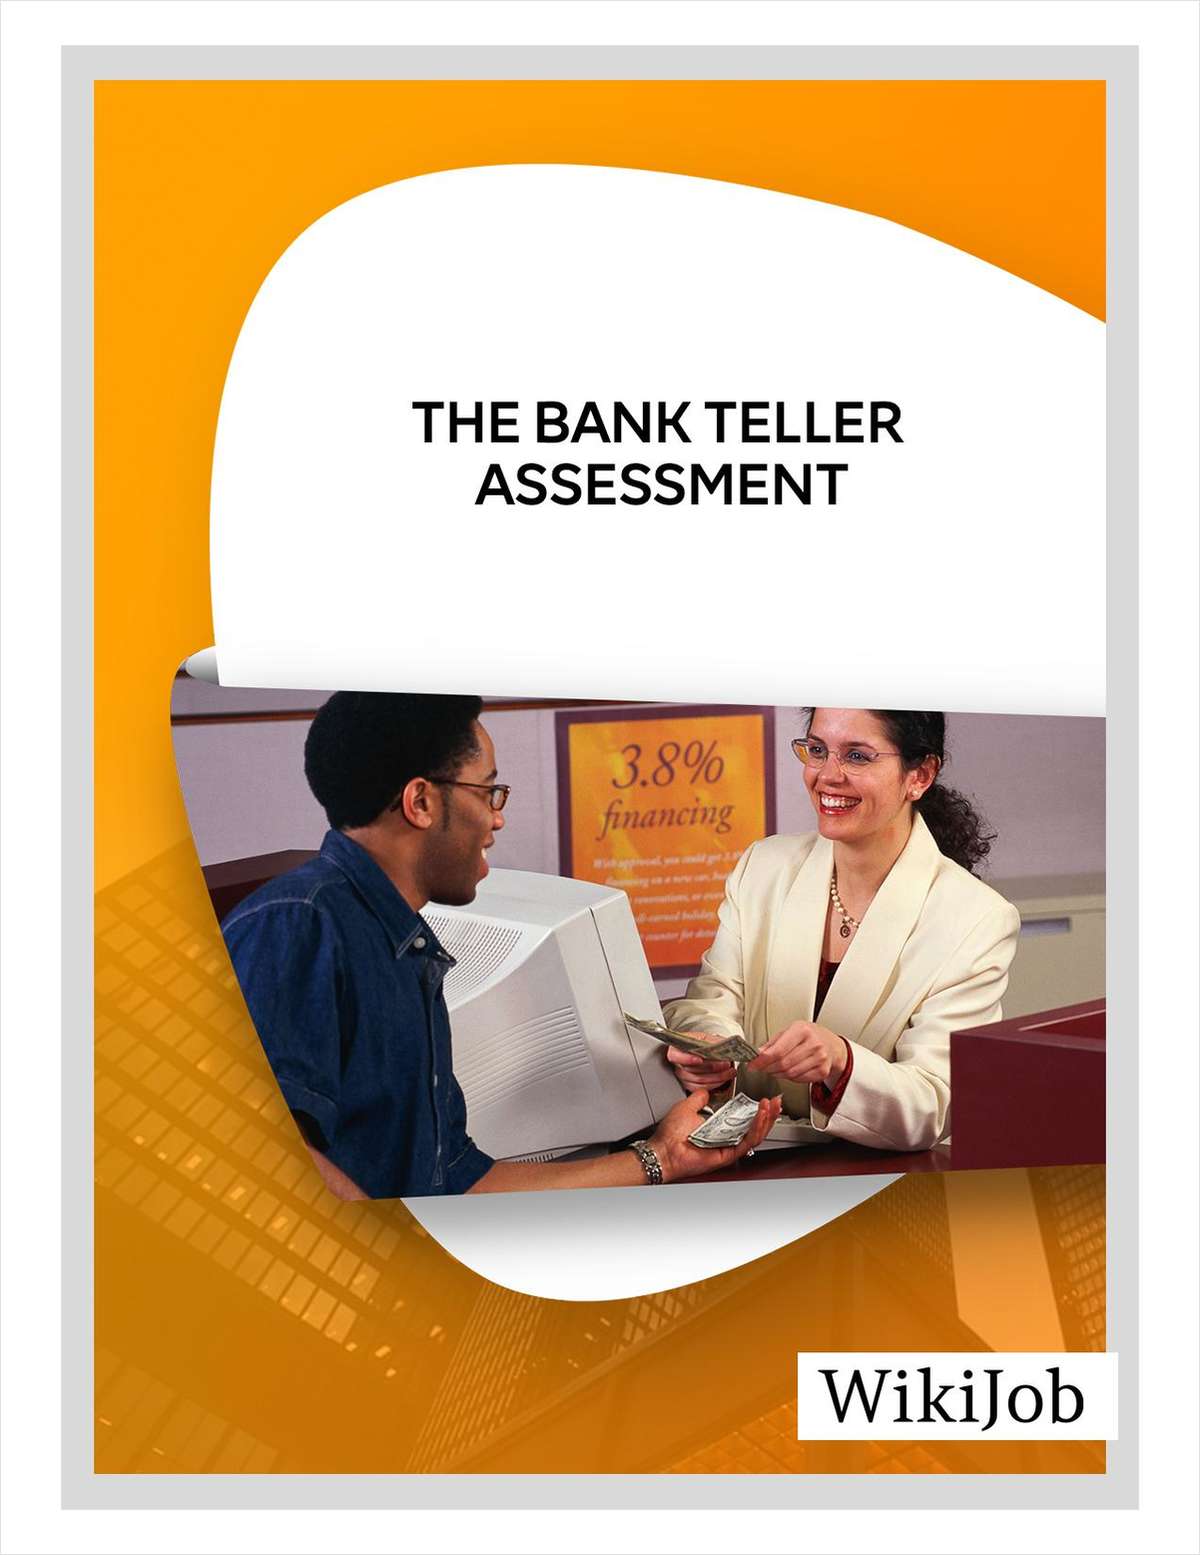 The Bank Teller Assessment